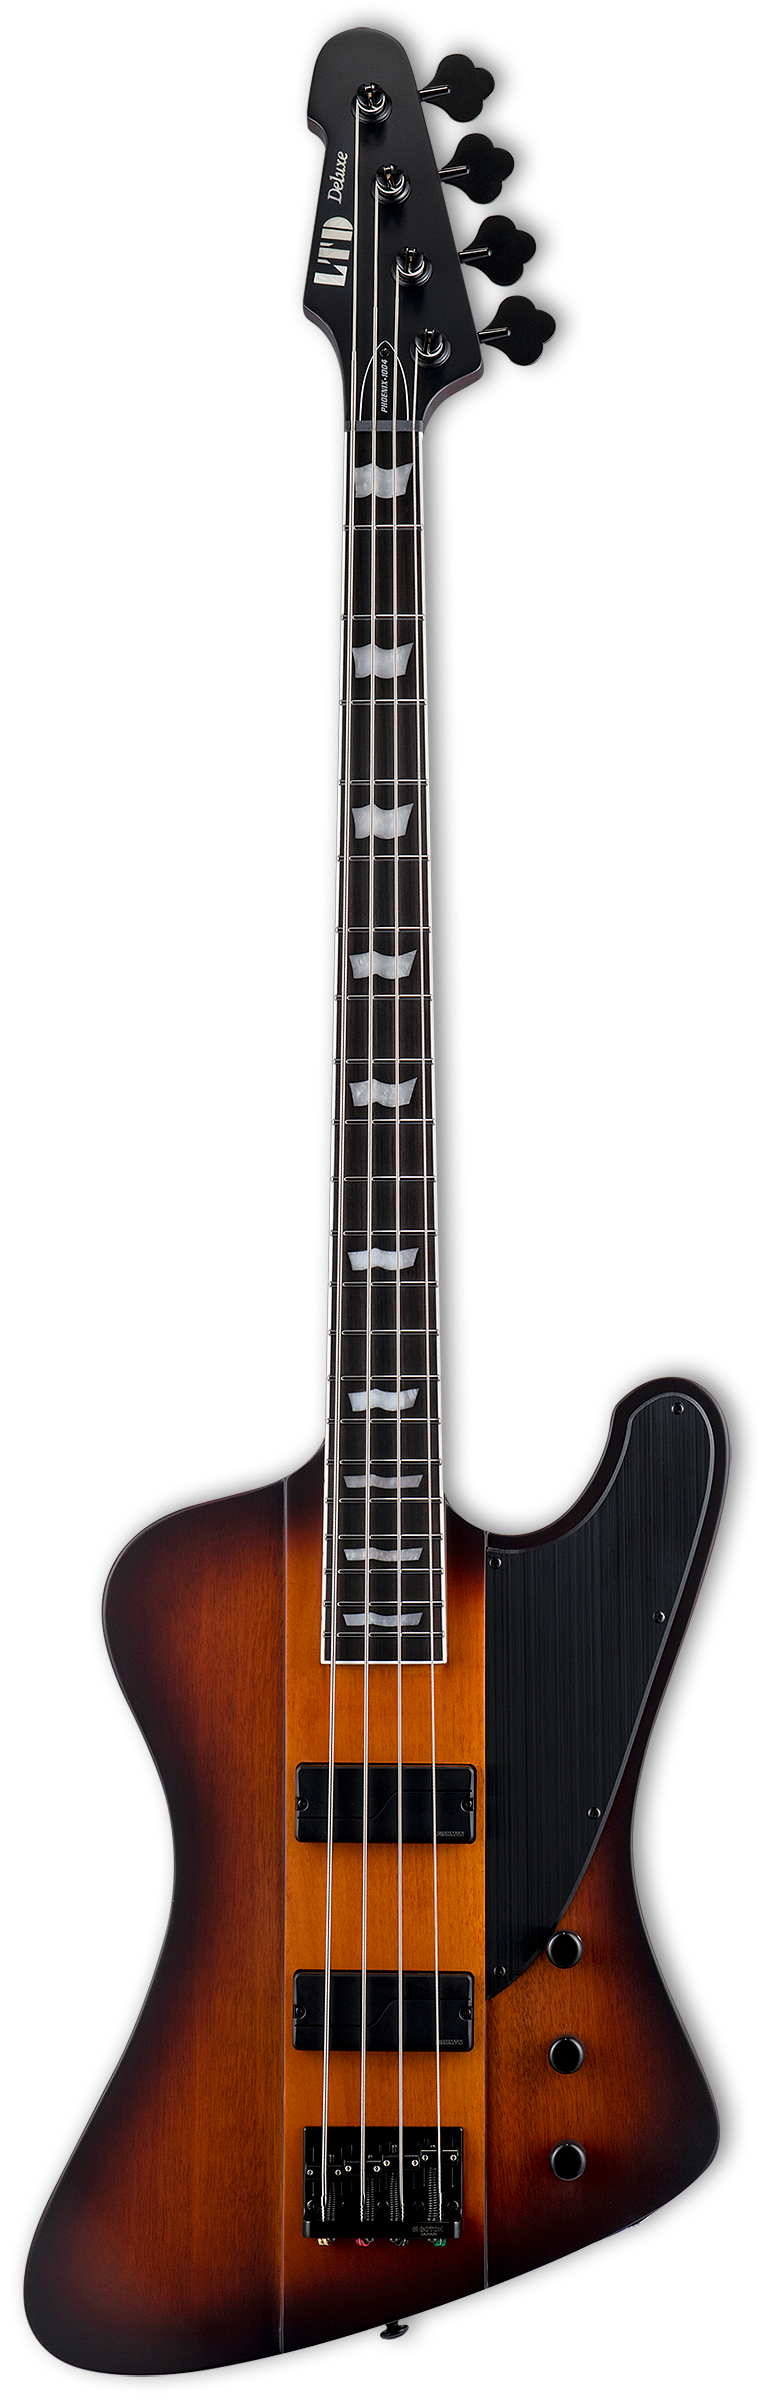 ESP LTD Phoenix-1004 Guitare basse électrique (Tobacco Sunburst Satin)